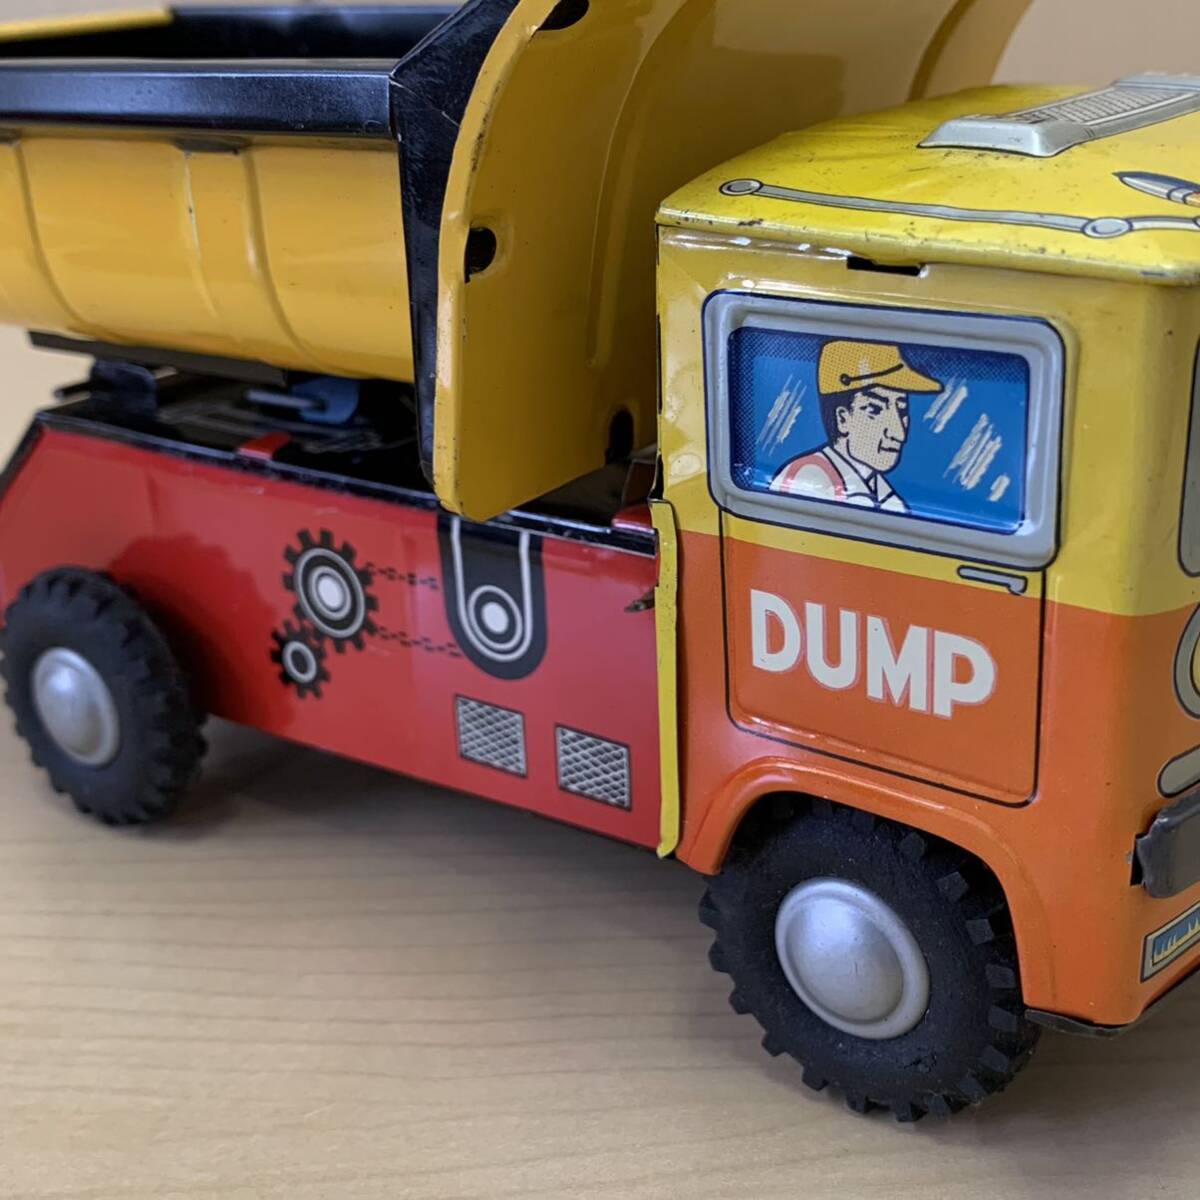 【TS0421 12】DUMP  самосвал    миникар (Minicar)   в настоящее время  вещь   ретро  ...  игрушка   коллекция   антиквариат   винтаж   красный × жёлтый  